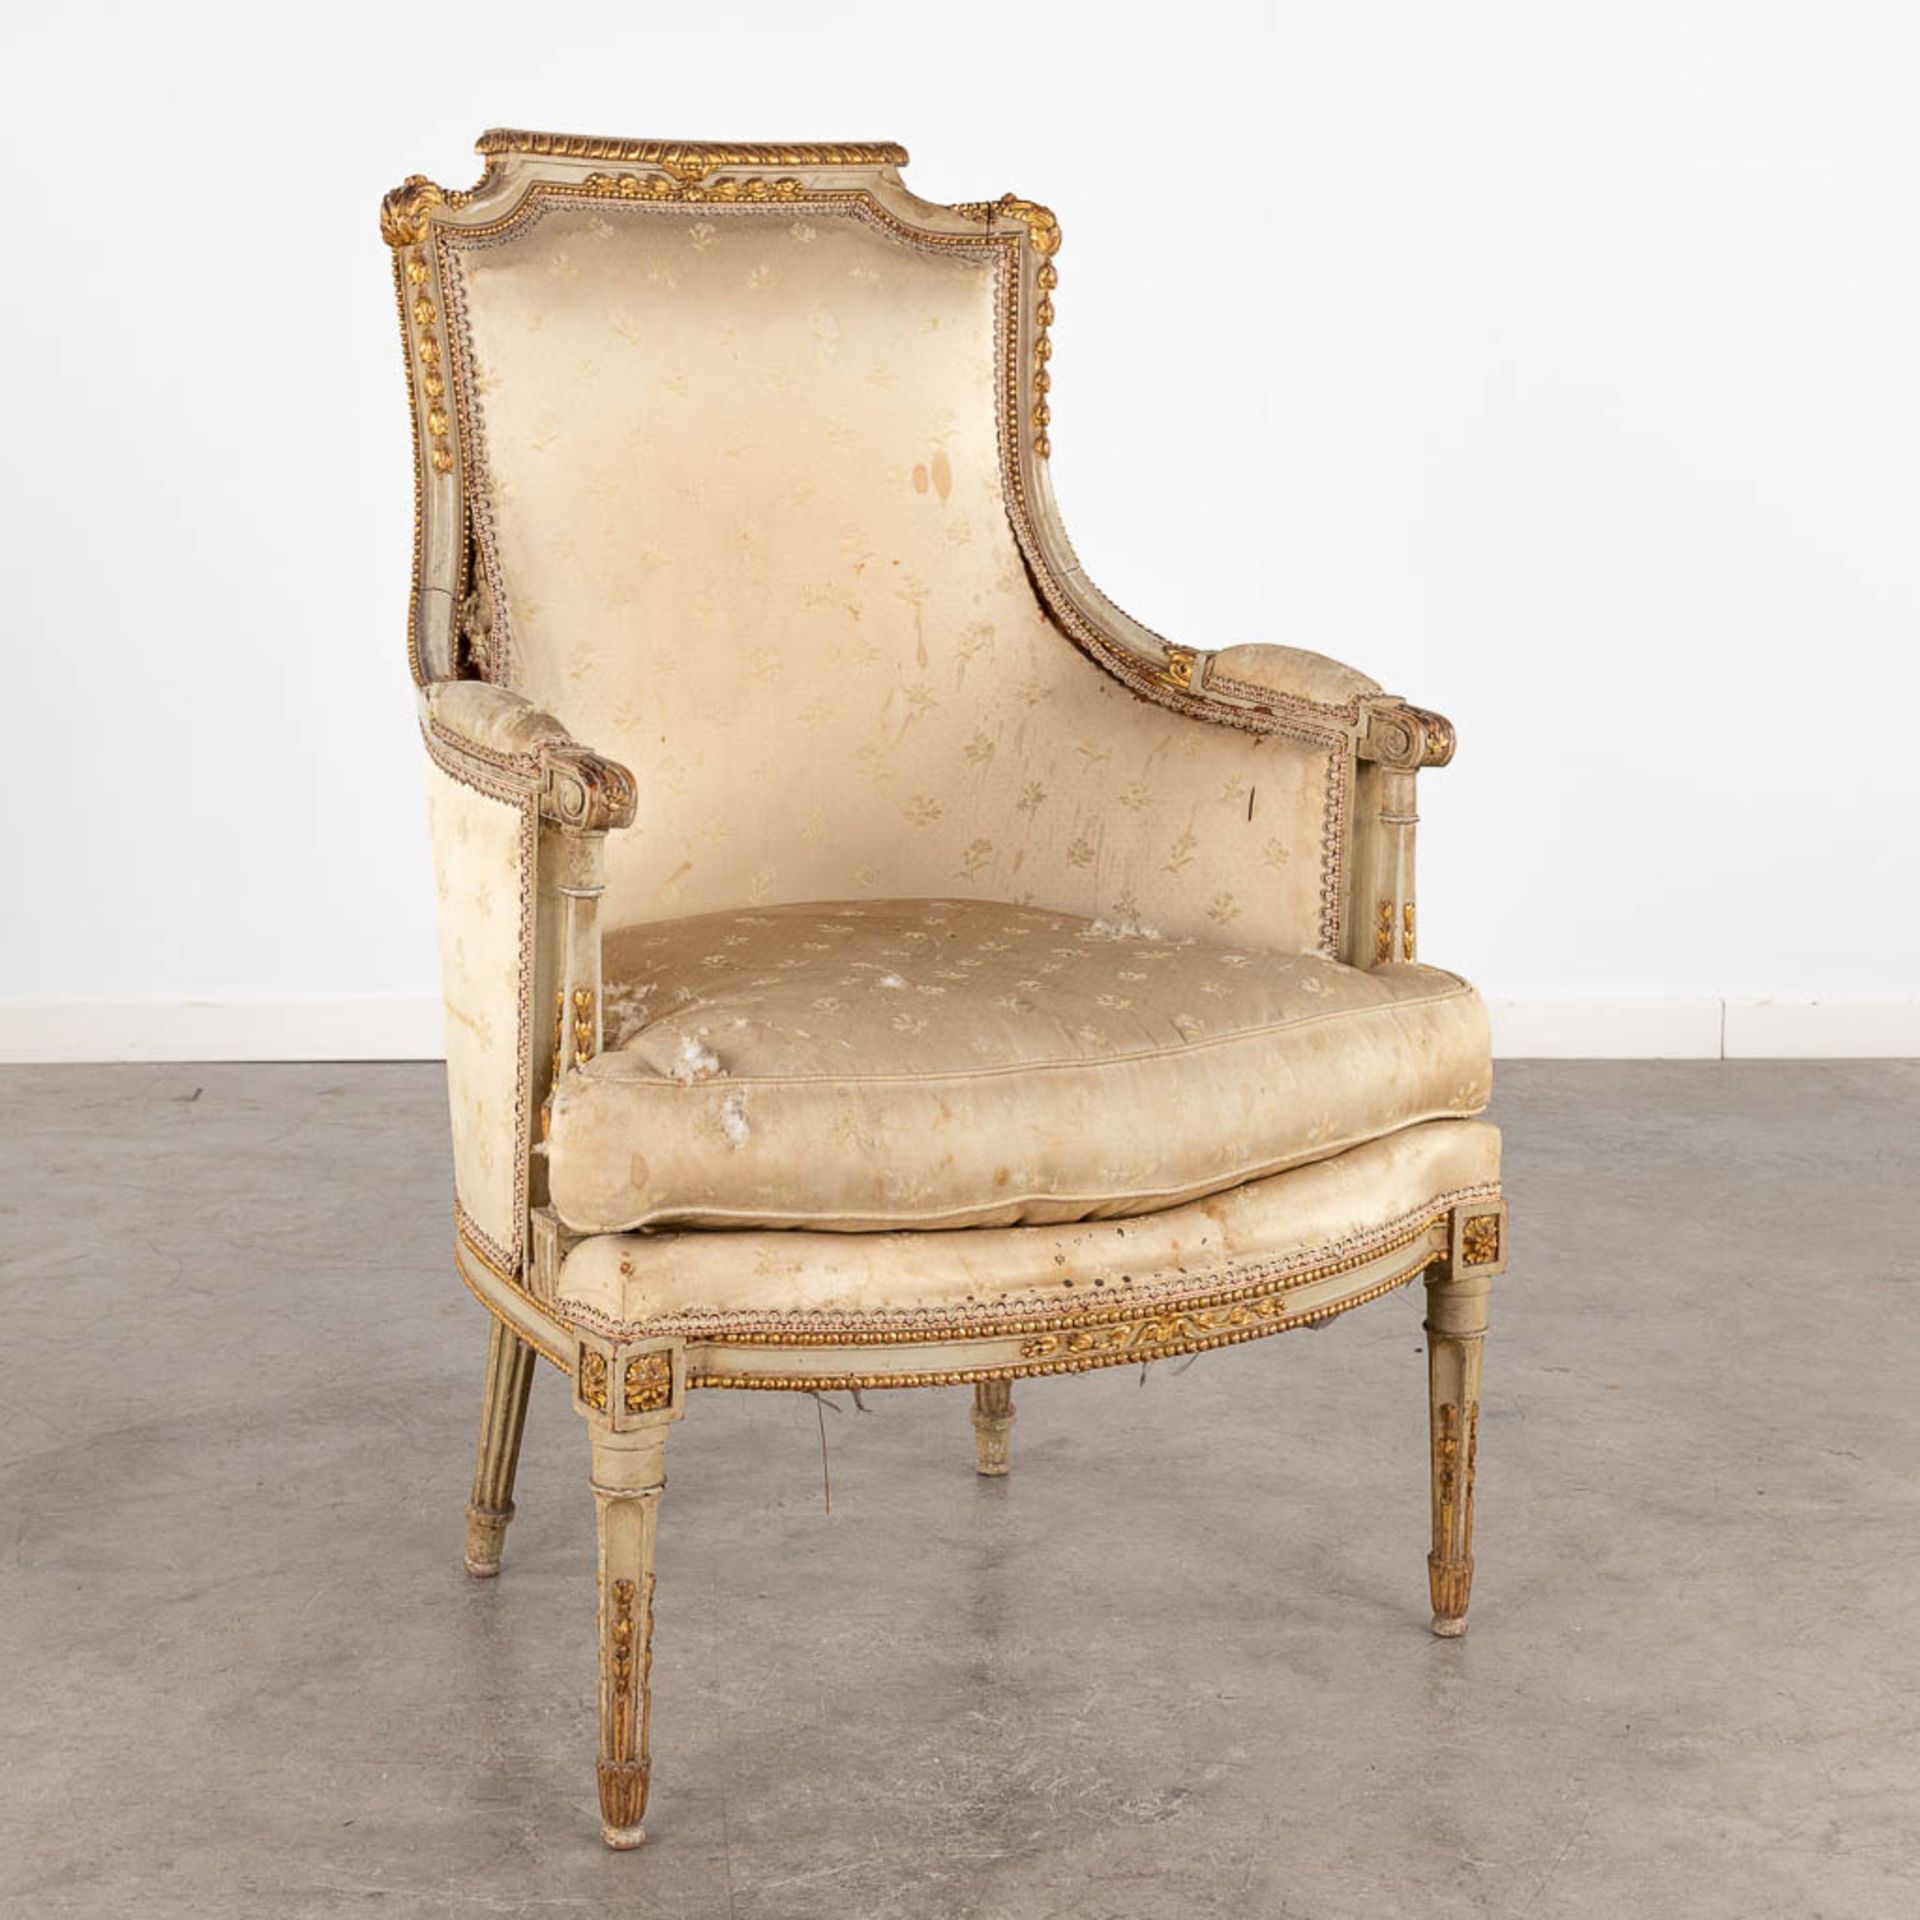 A sculptured armchair, Louis XVI style, 19th C. (D:64 x W:65 x H:100 cm)